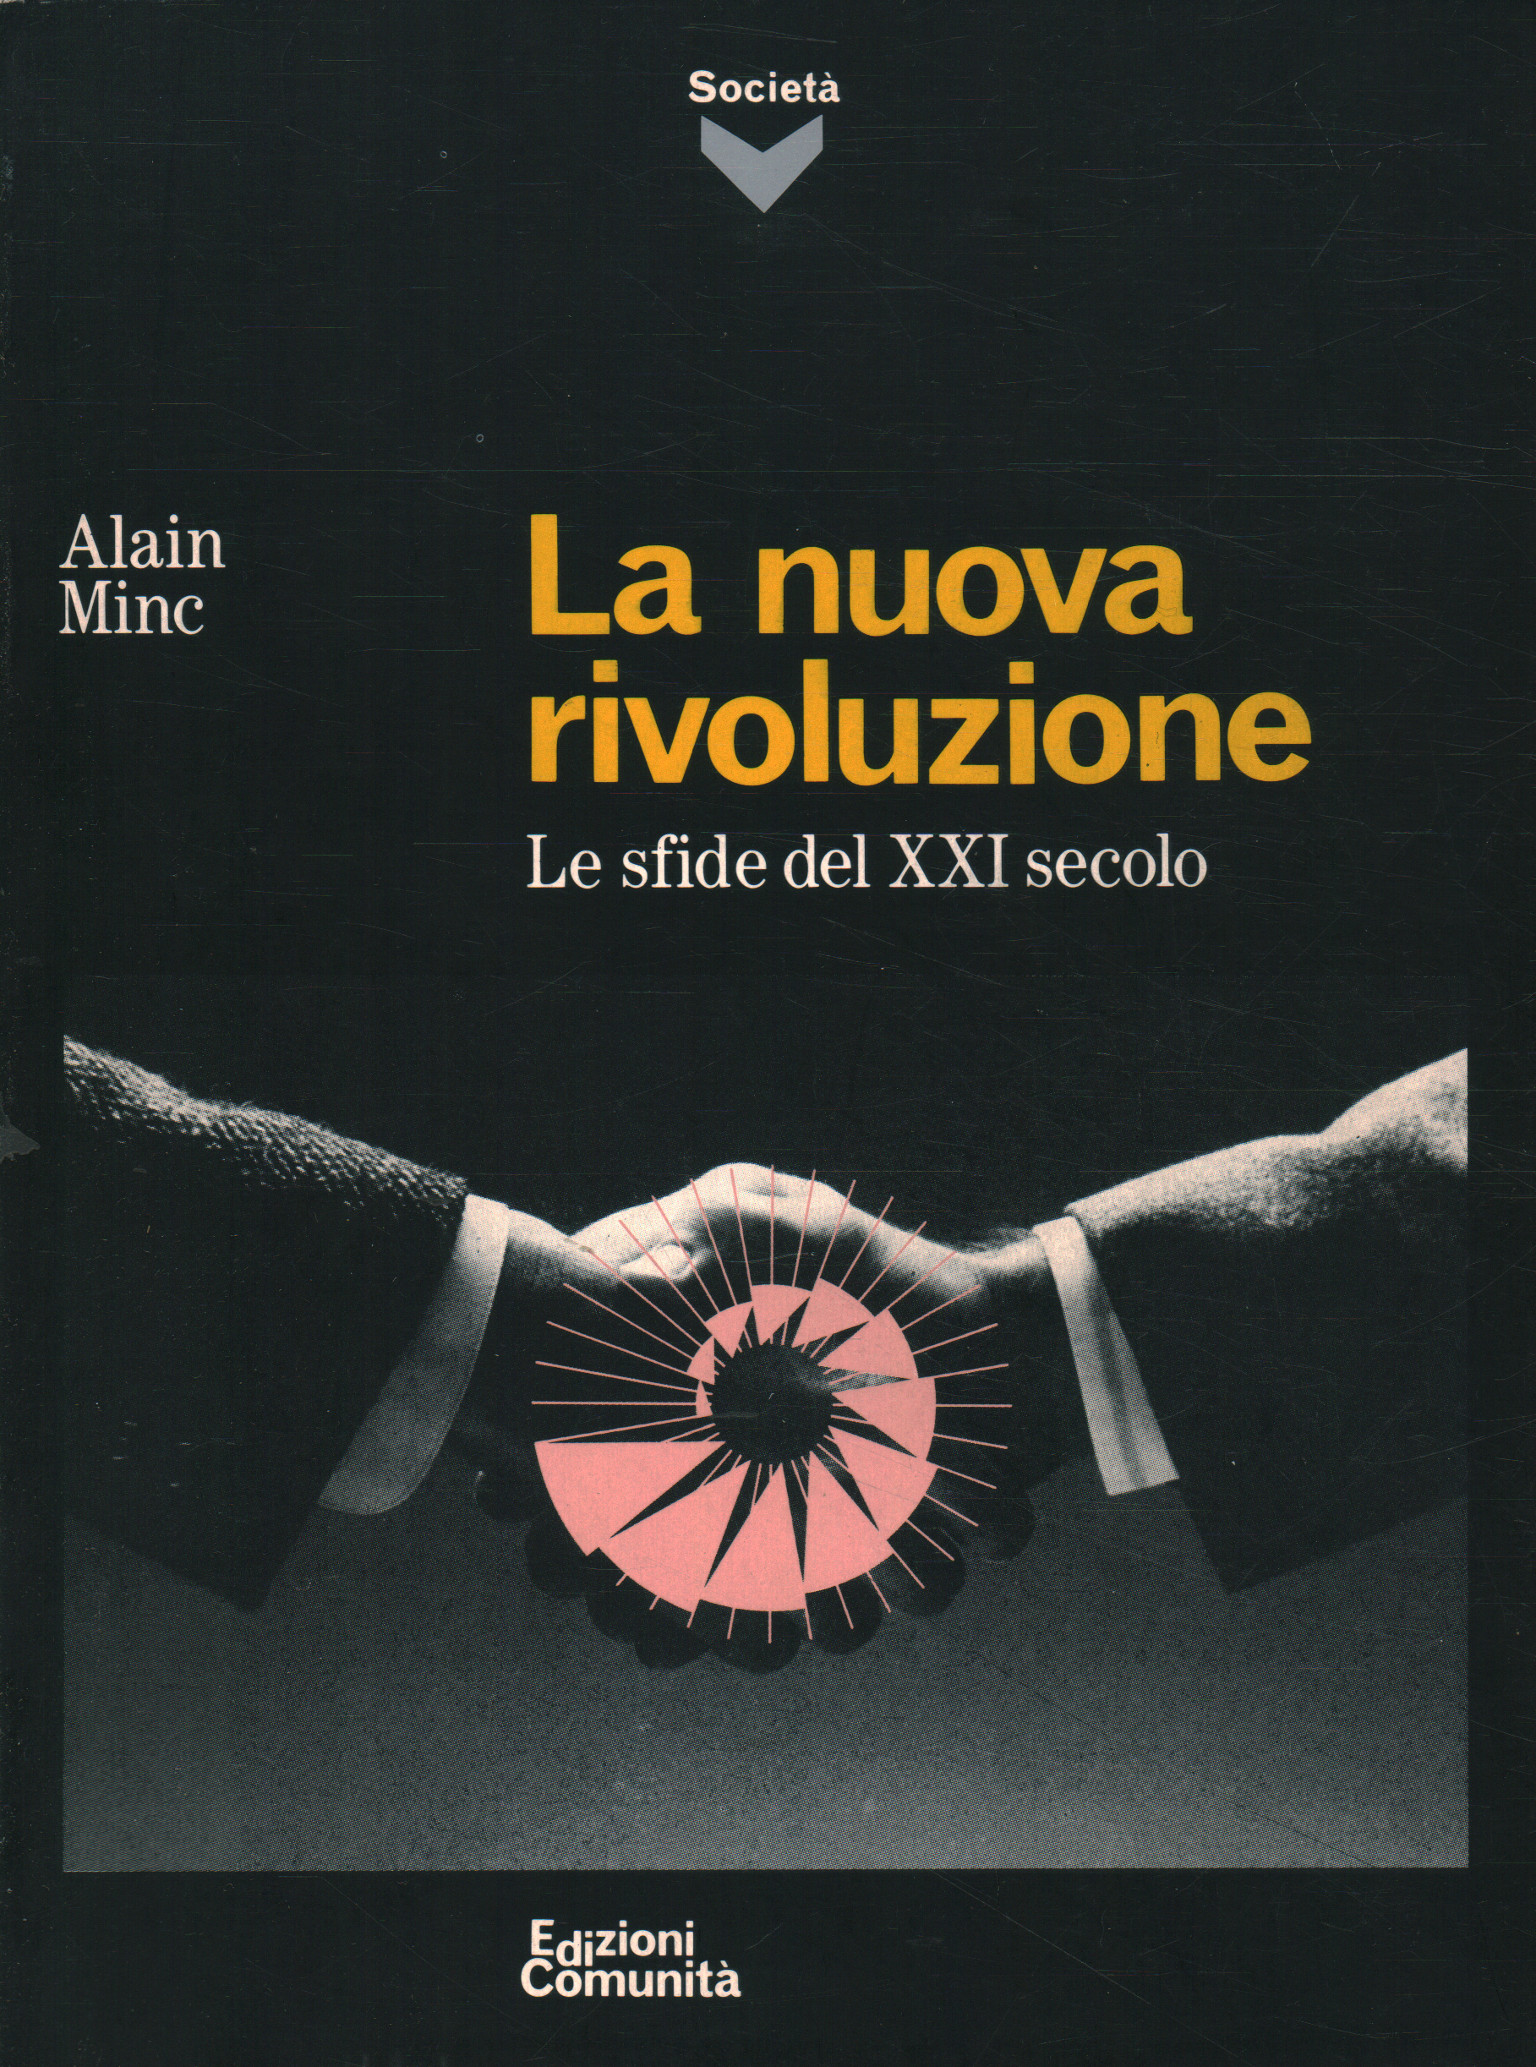 La nuova rivoluzione, Alain Minc